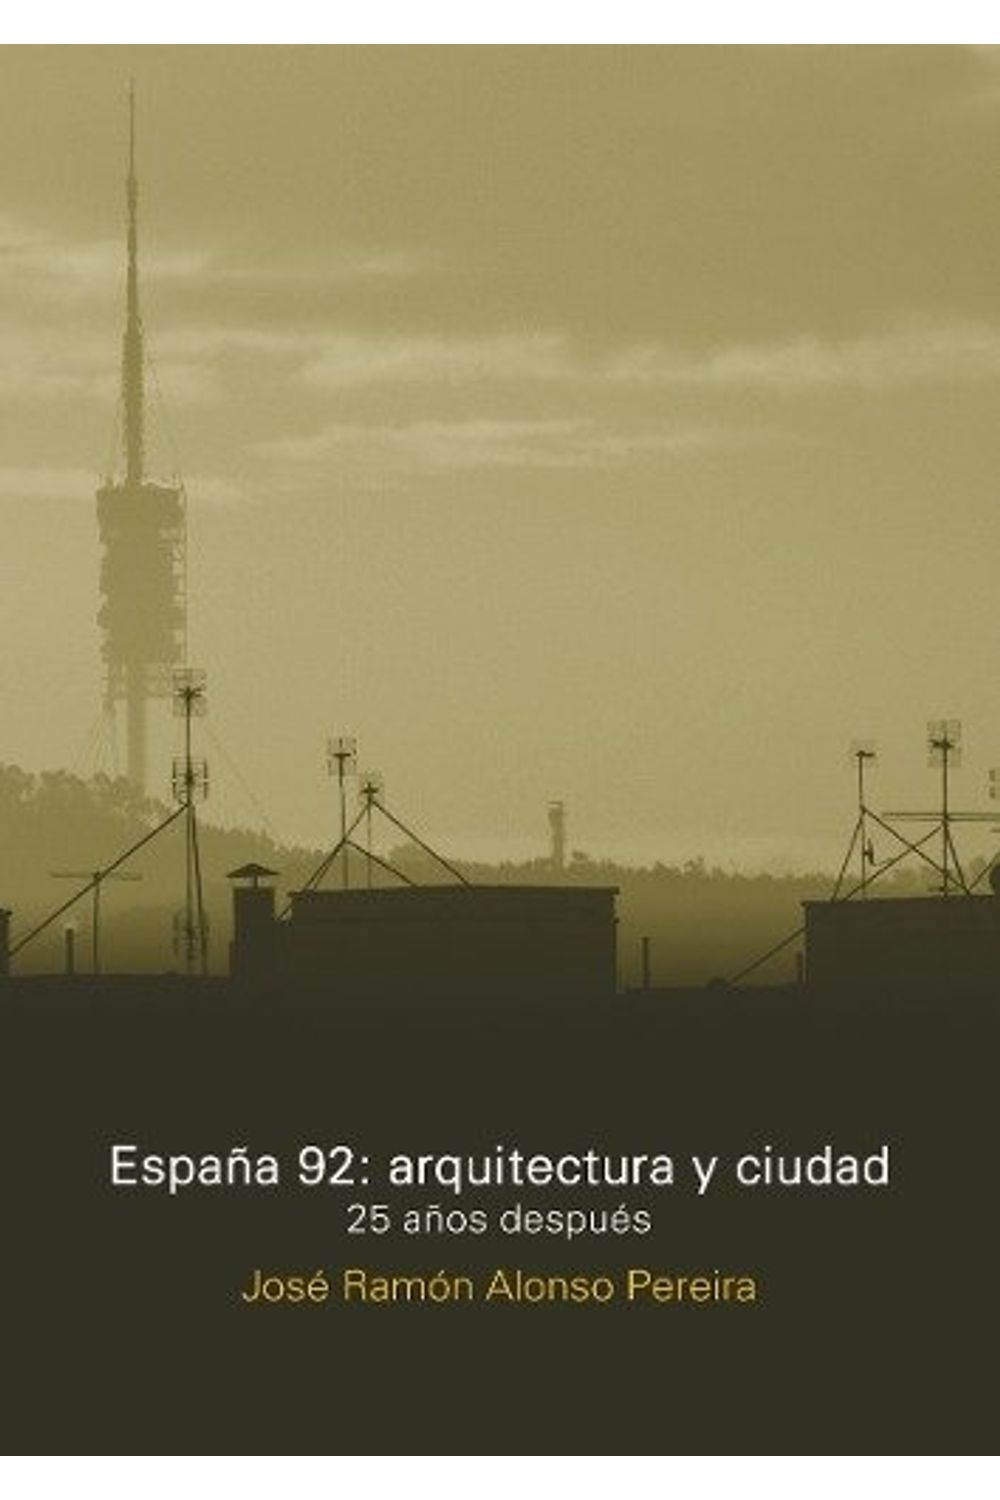 bm-espana-92-arquitectura-y-ciudad-nobukodiseno-editorial-9789874160386